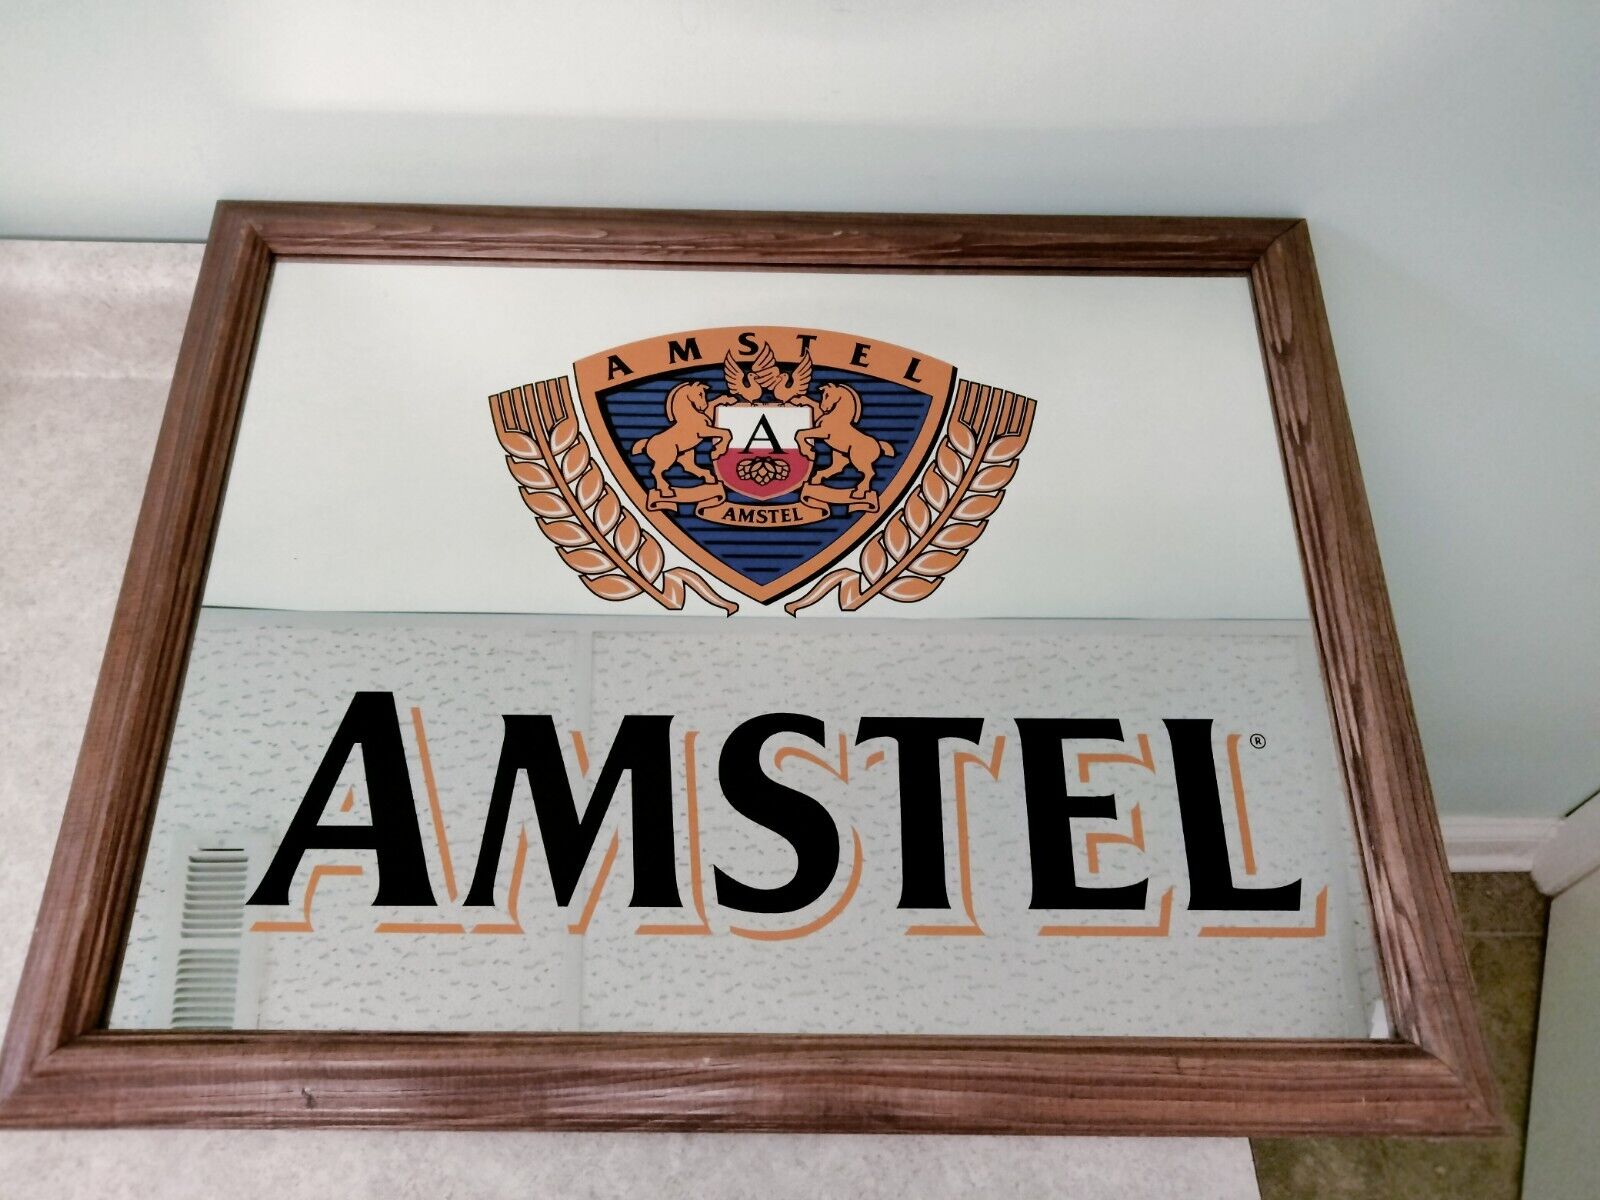 Vintage Big Amstel beer mirror wood frame man cave rare 27 x 21 bar sign